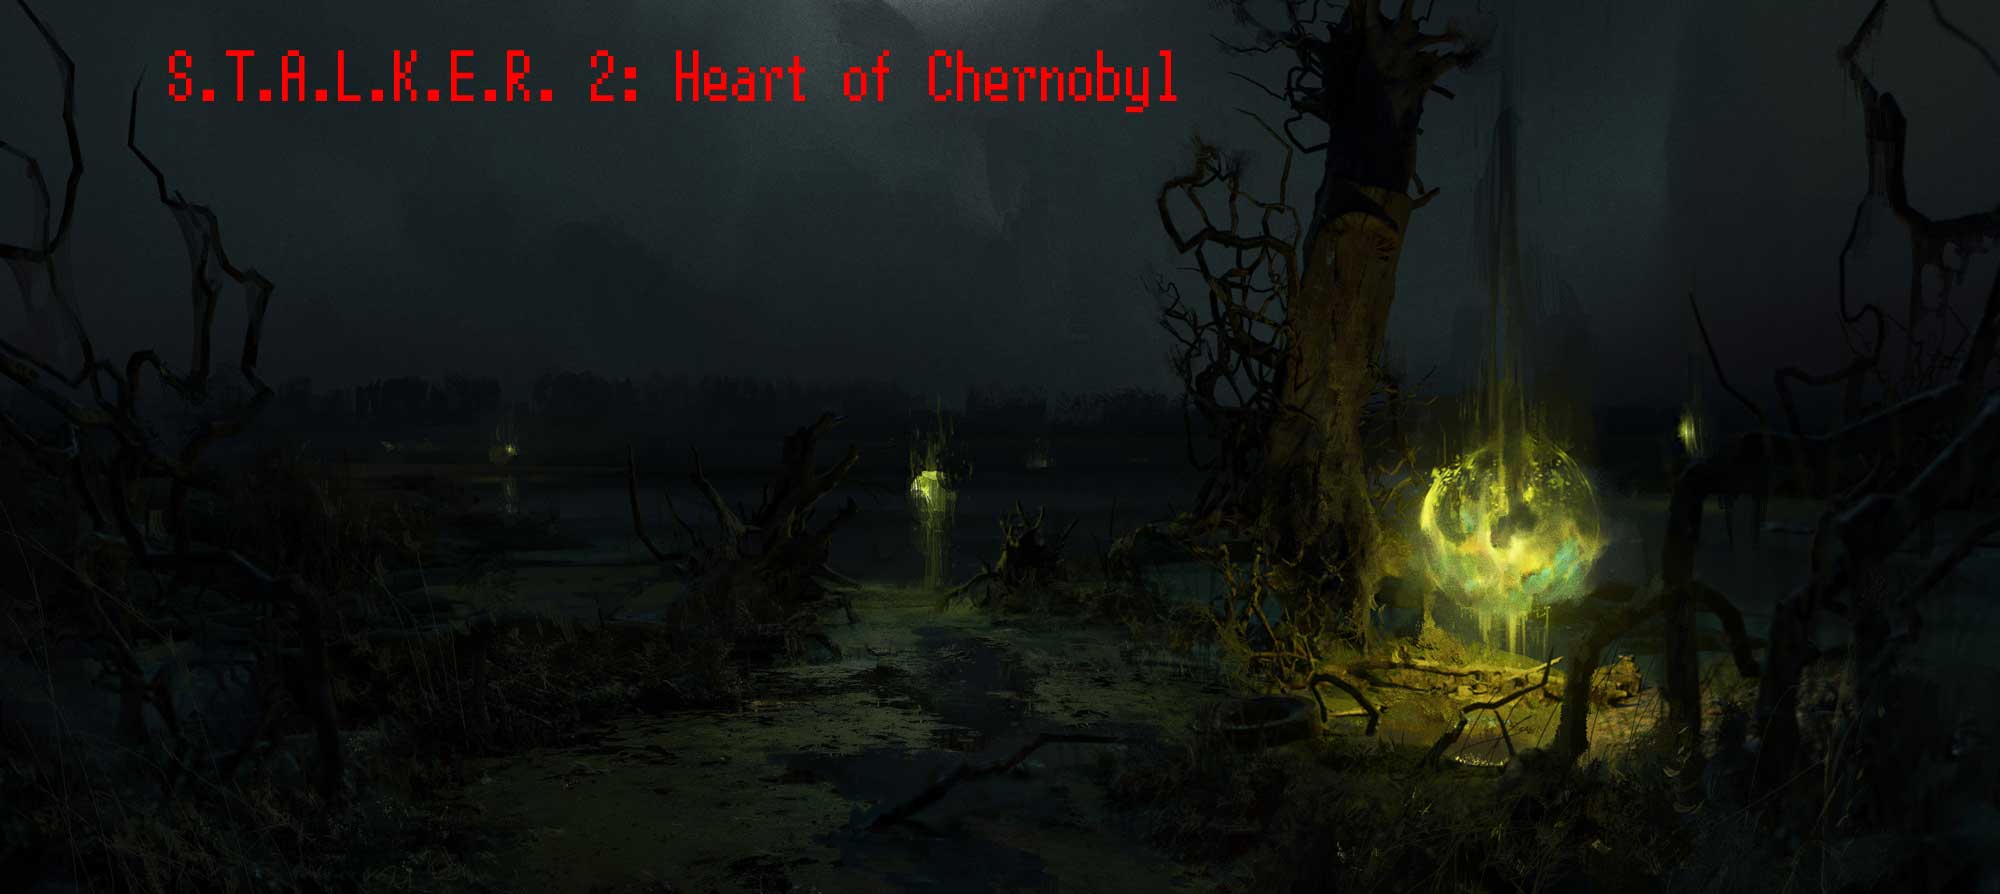 Скачать S.T.A.L.K.E.R. 2: Heart of Chernobyl можно с торрентов уже сейчас